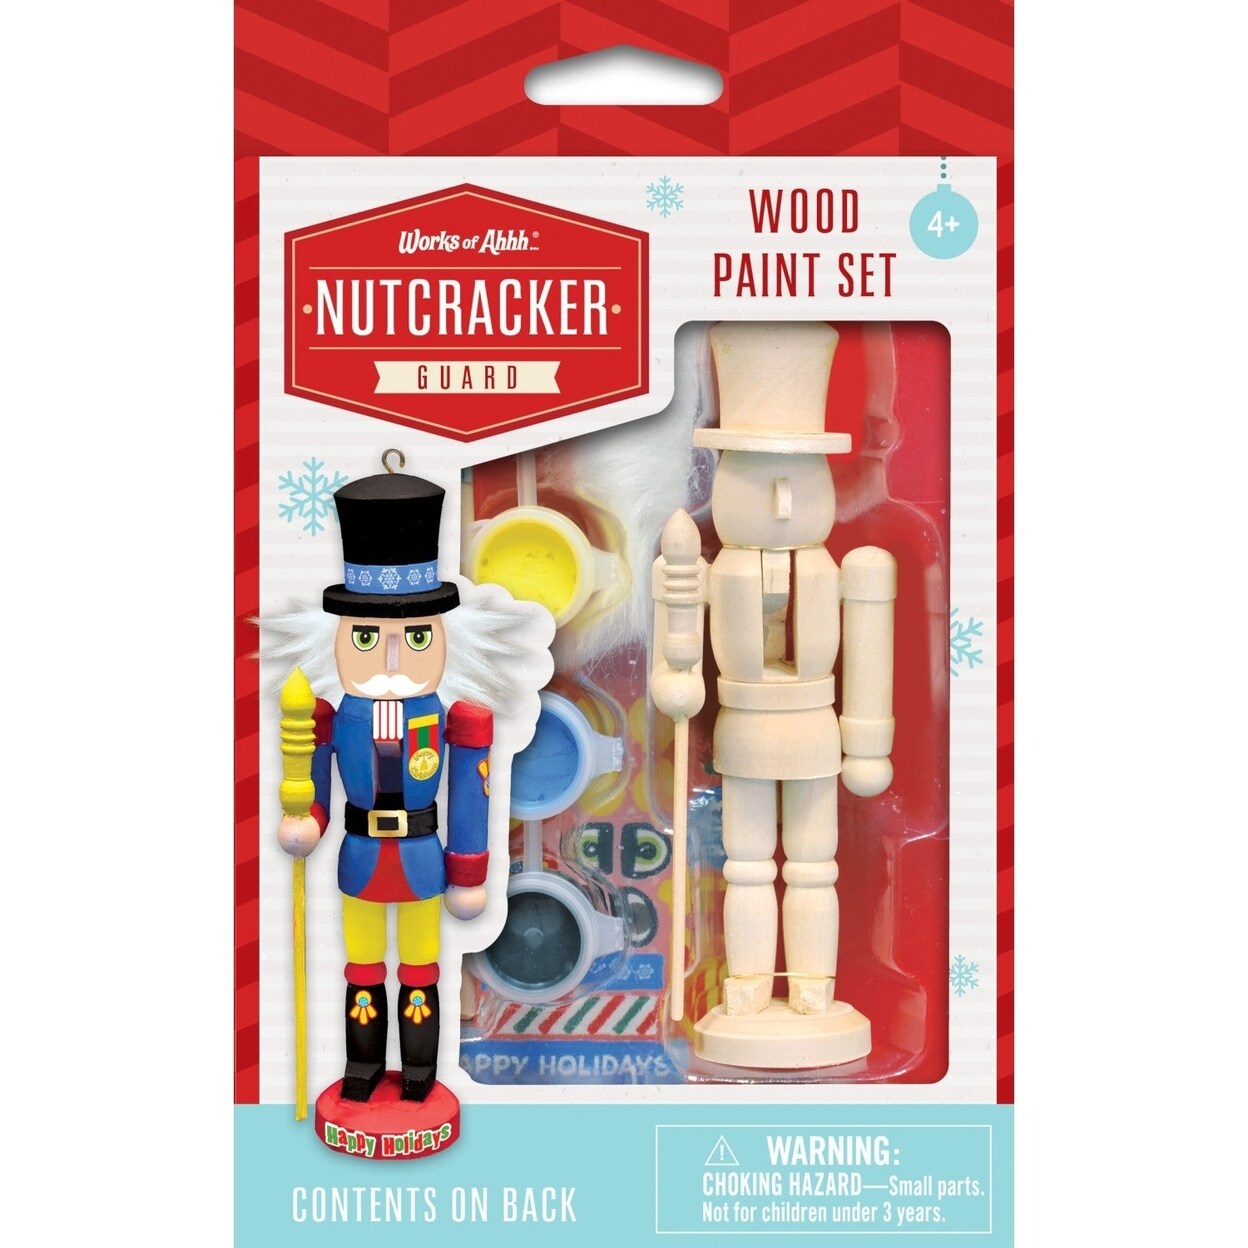 MasterPieces Nutcracker Guard Ornament Wood Paint Kit